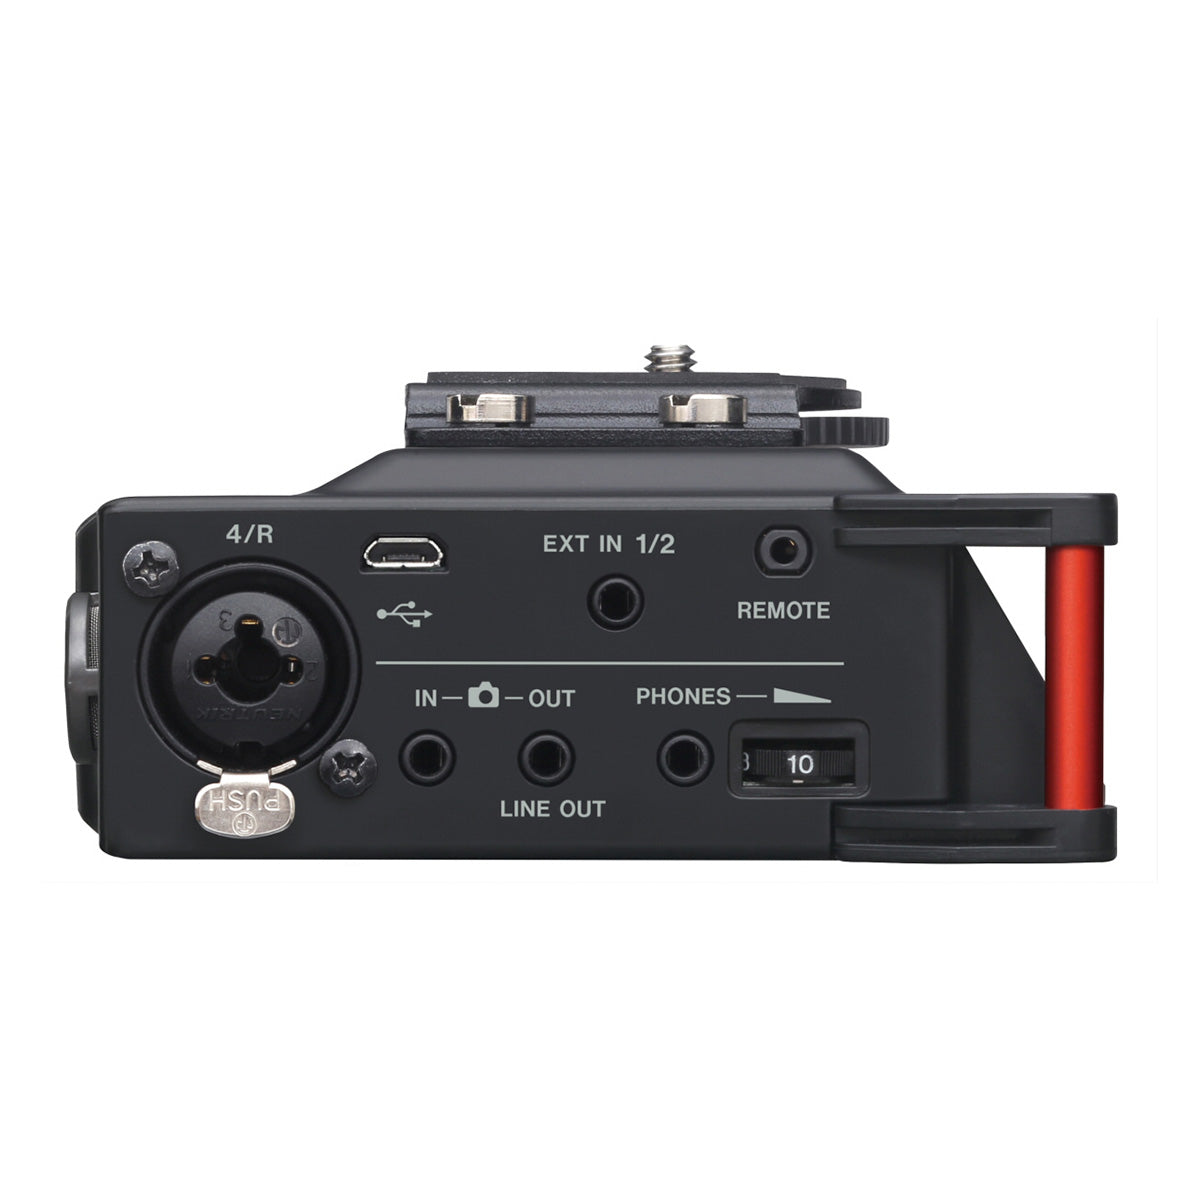 TASCAM(タスカム) カメラ用リニアPCMレコーダー/ミキサー DR-70D